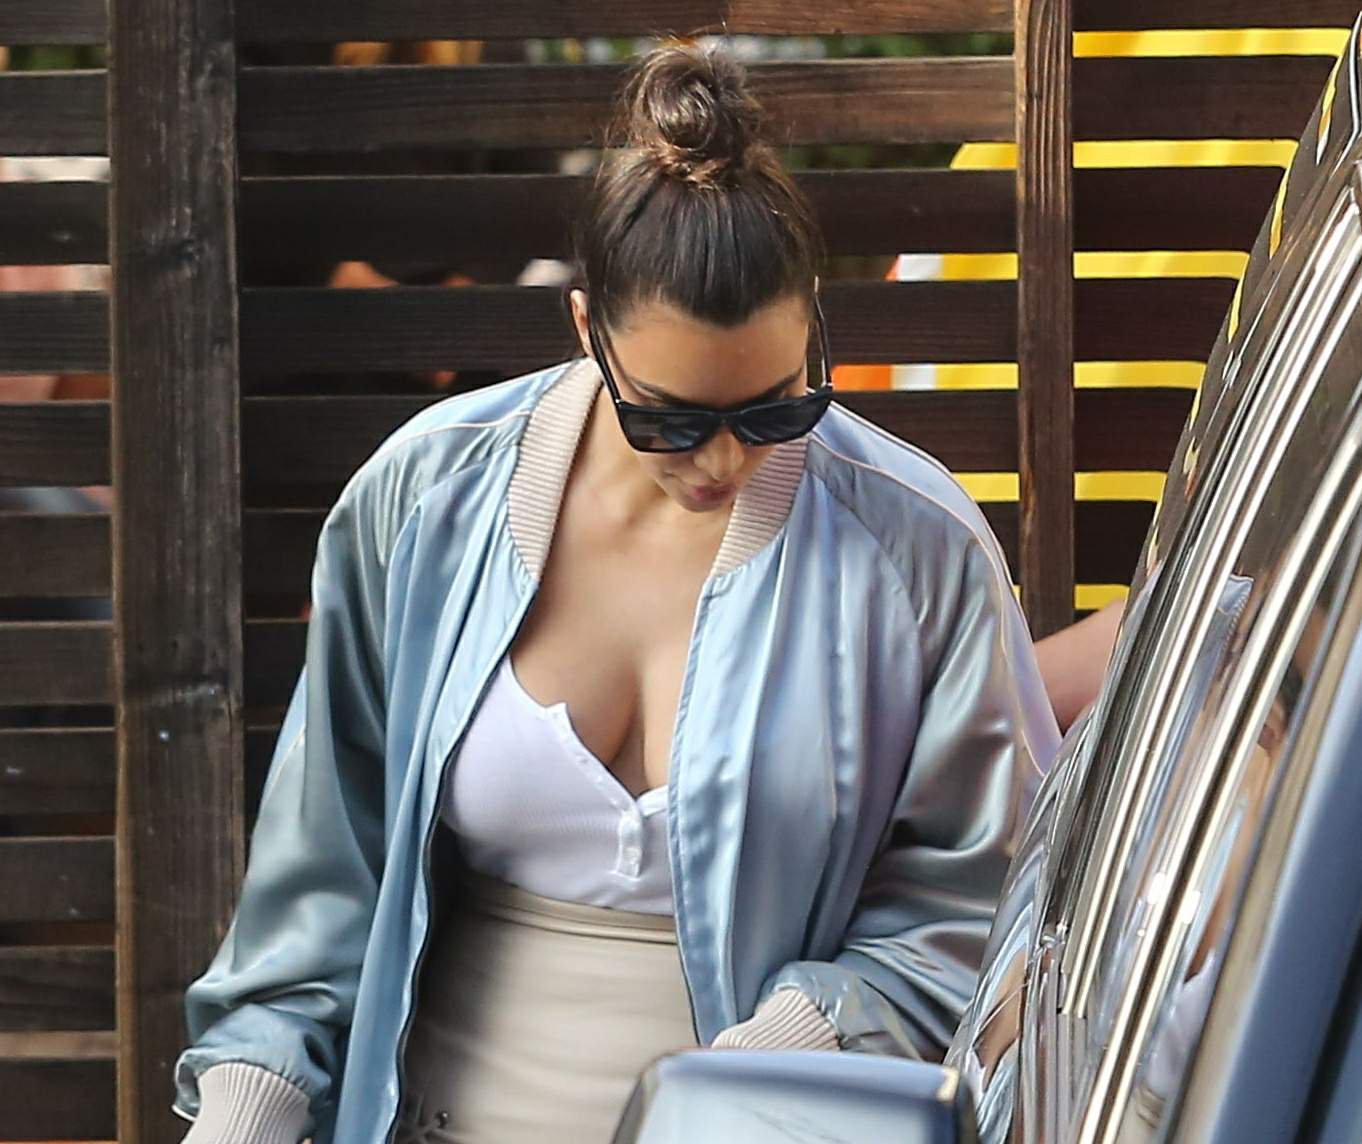 Kim Kardashian z dekoltem w sportowej bluzie